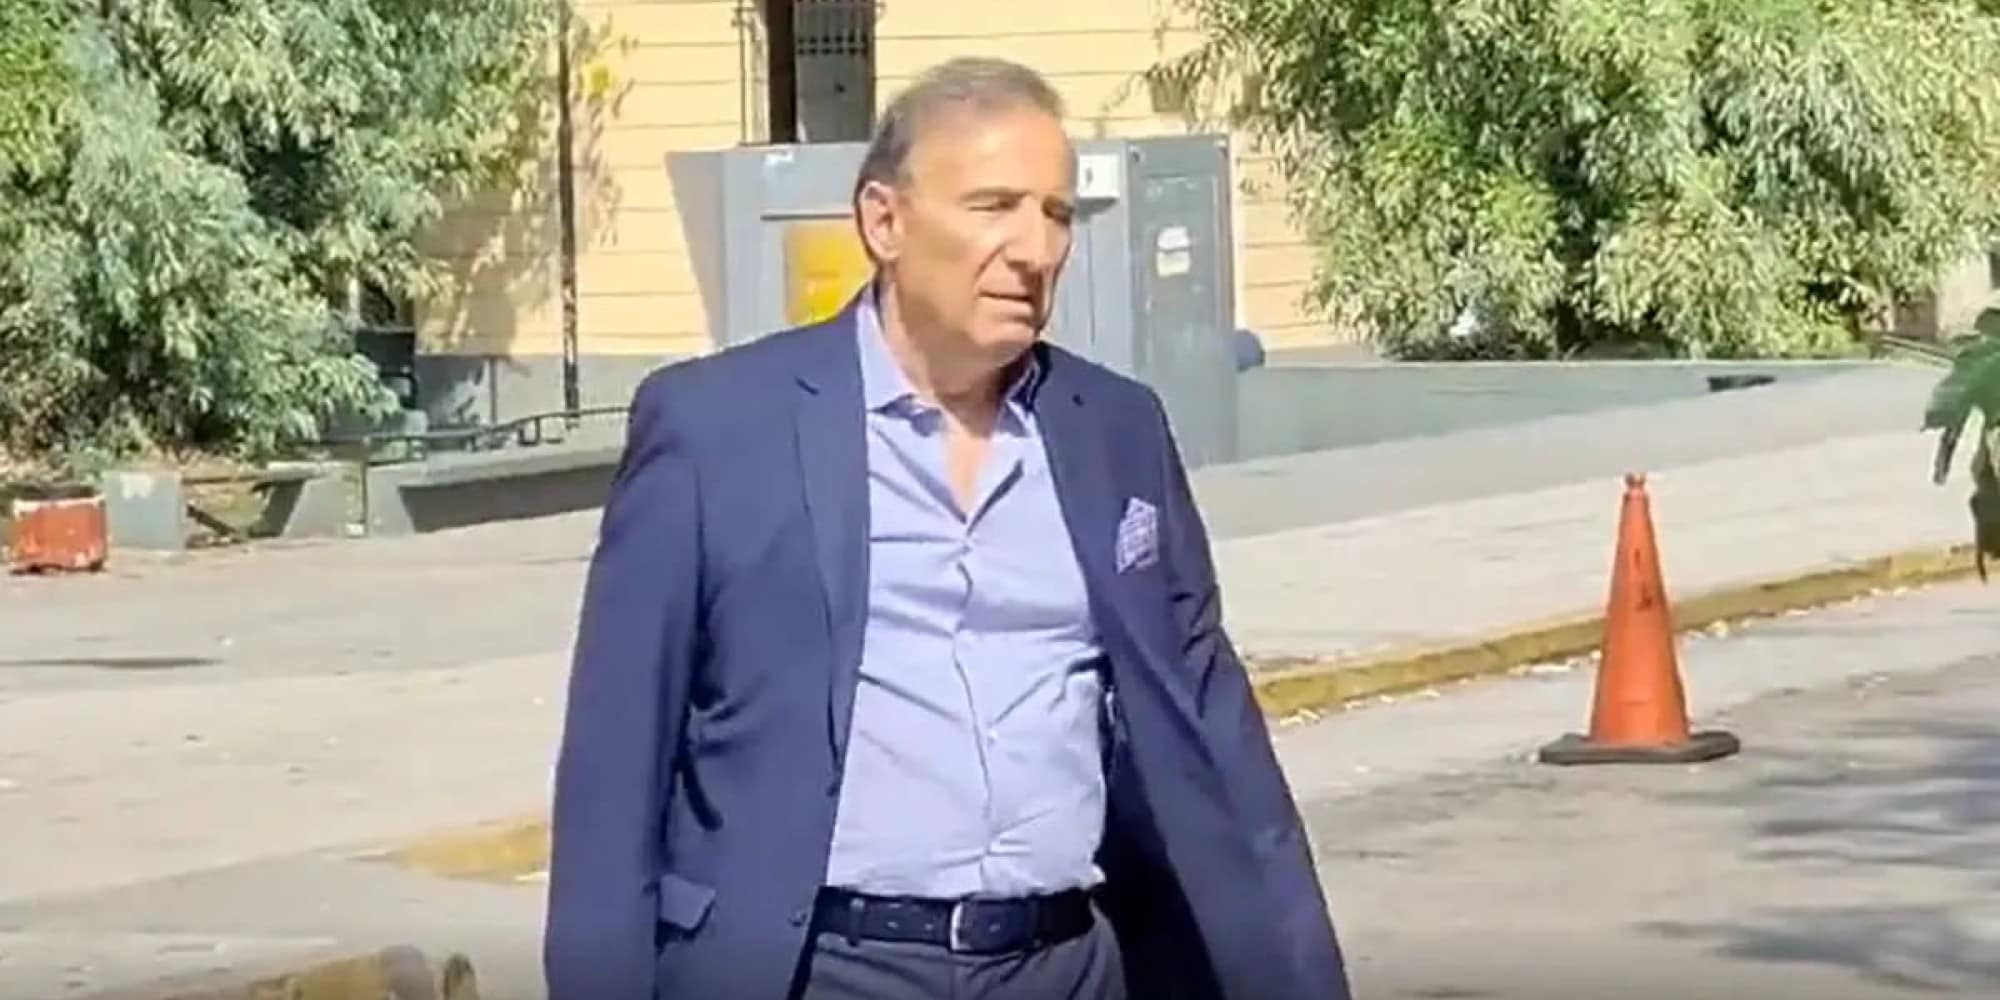 Ο ιατροδικαστής Καρακούκης έφτασε στην Ευελπίδων